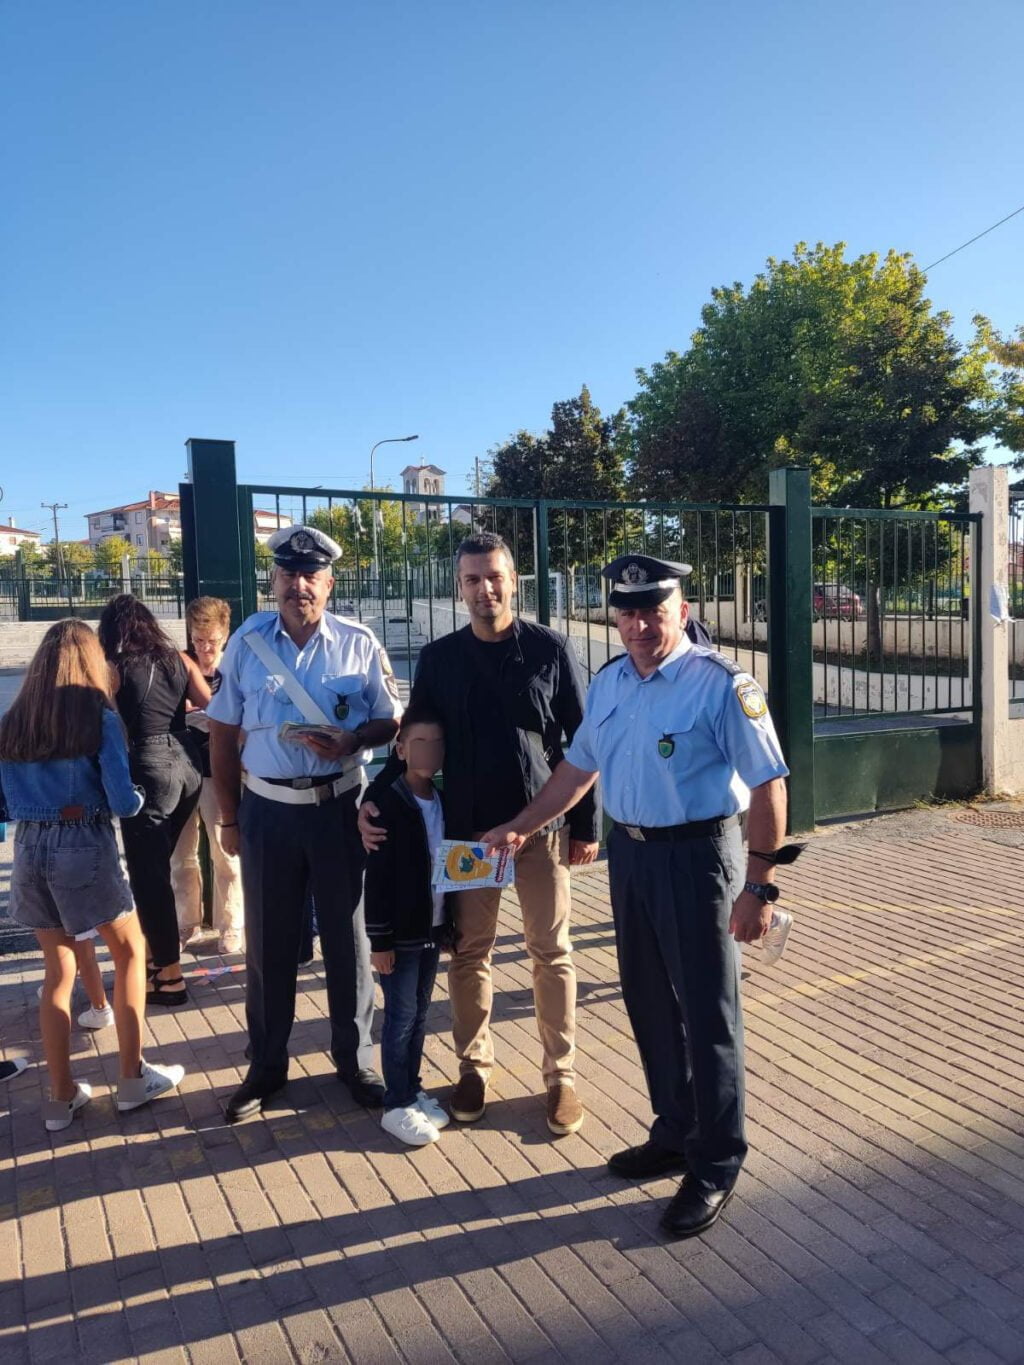 Ενημερωτικά φυλλάδια τροχαίας και σχολικά προγράμματα με σελιδοδείκτες διανεμήθηκαν σήμερα από αστυνομικούς σε μαθητές Δημοτικών Σχολείων και γονείς σε περιοχές της Δυτικής Μακεδονίας